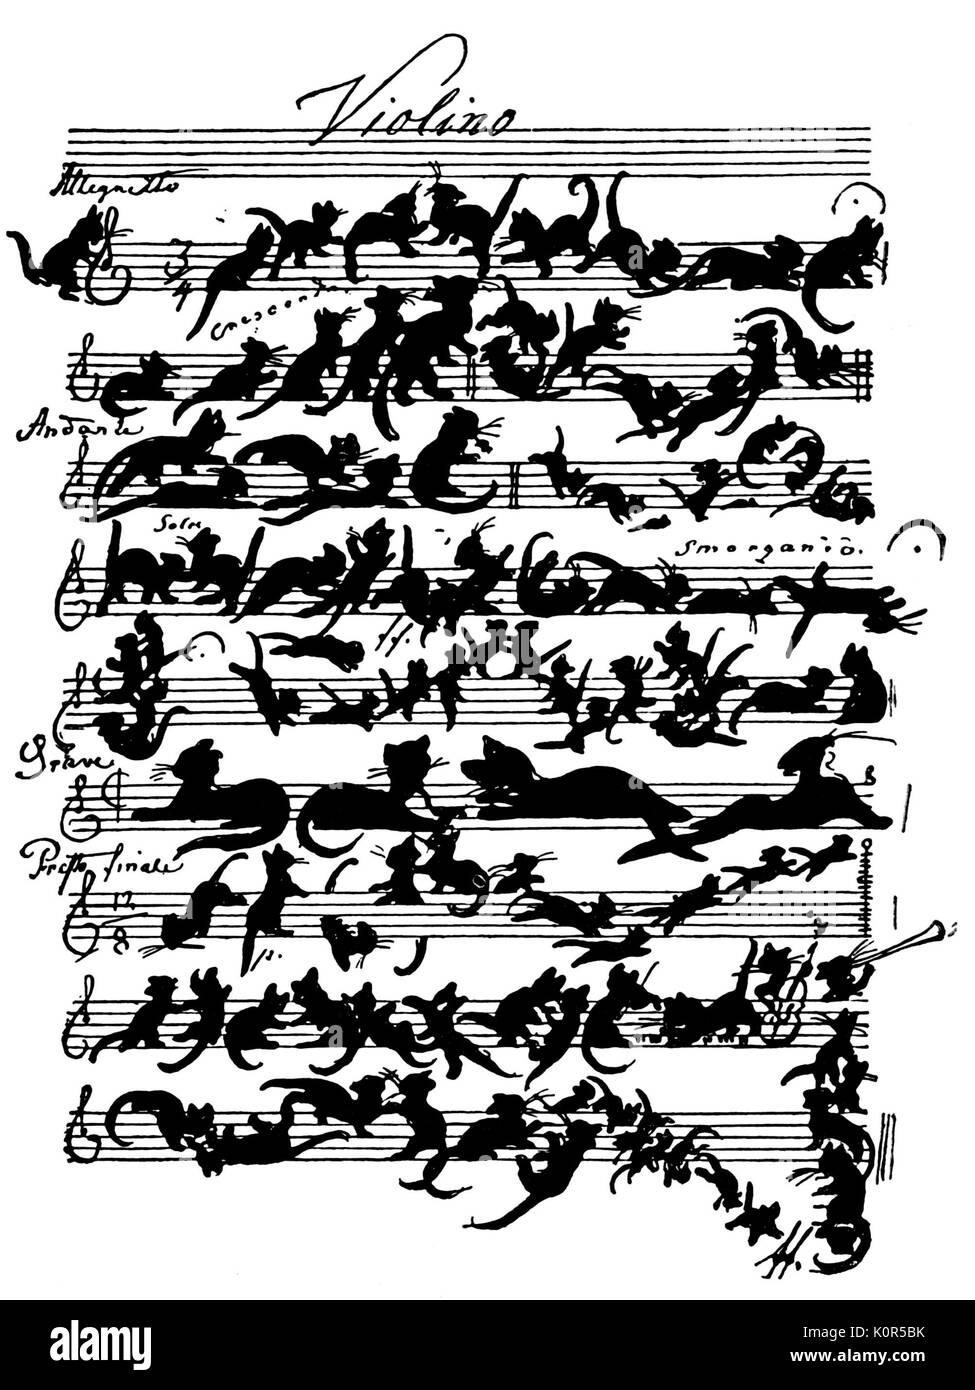 'Cat Violon Score' par Moritz von Schwind intitulée "Zukunftsmusik' (Musique de l'avenir). Terme inventé par Wagner parodiant Wagner's concept. Von Schwind était dans le cercle des amis de Schubert. 1804-1871, peintre autrichien. Banque D'Images